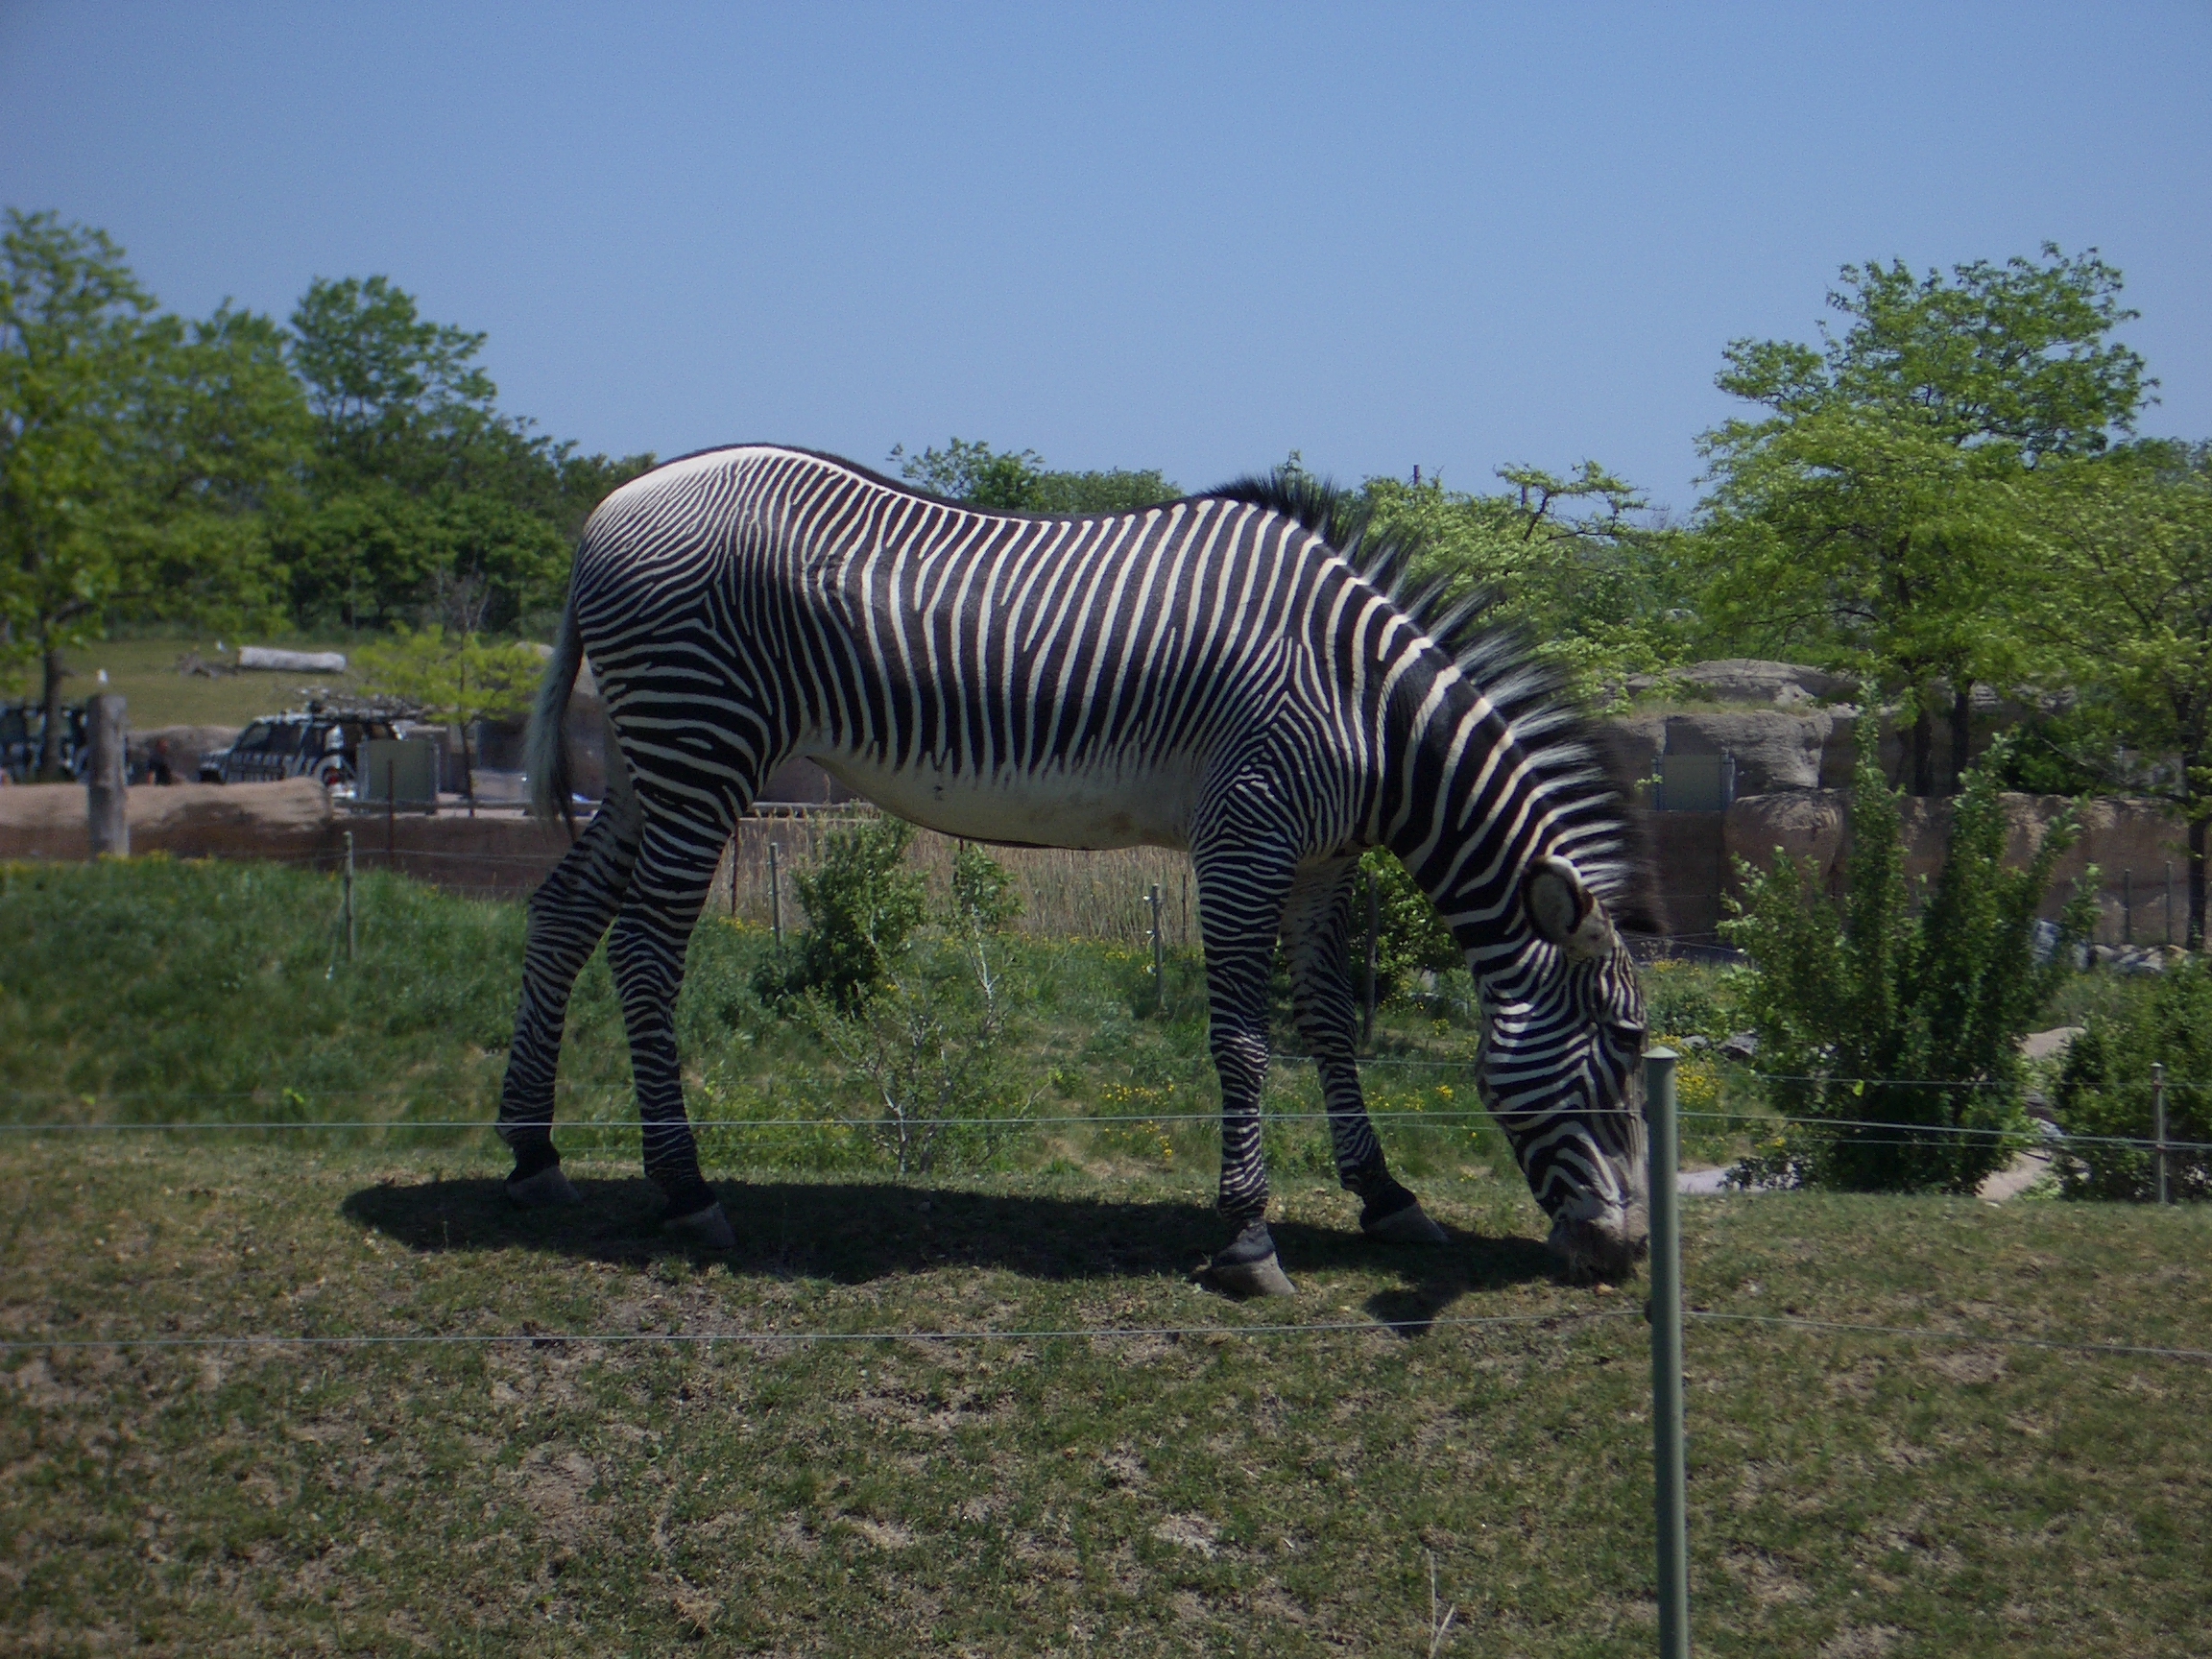 mattphilip matt philip mammal animal zebra striped stripes black and white mane legs hoofs